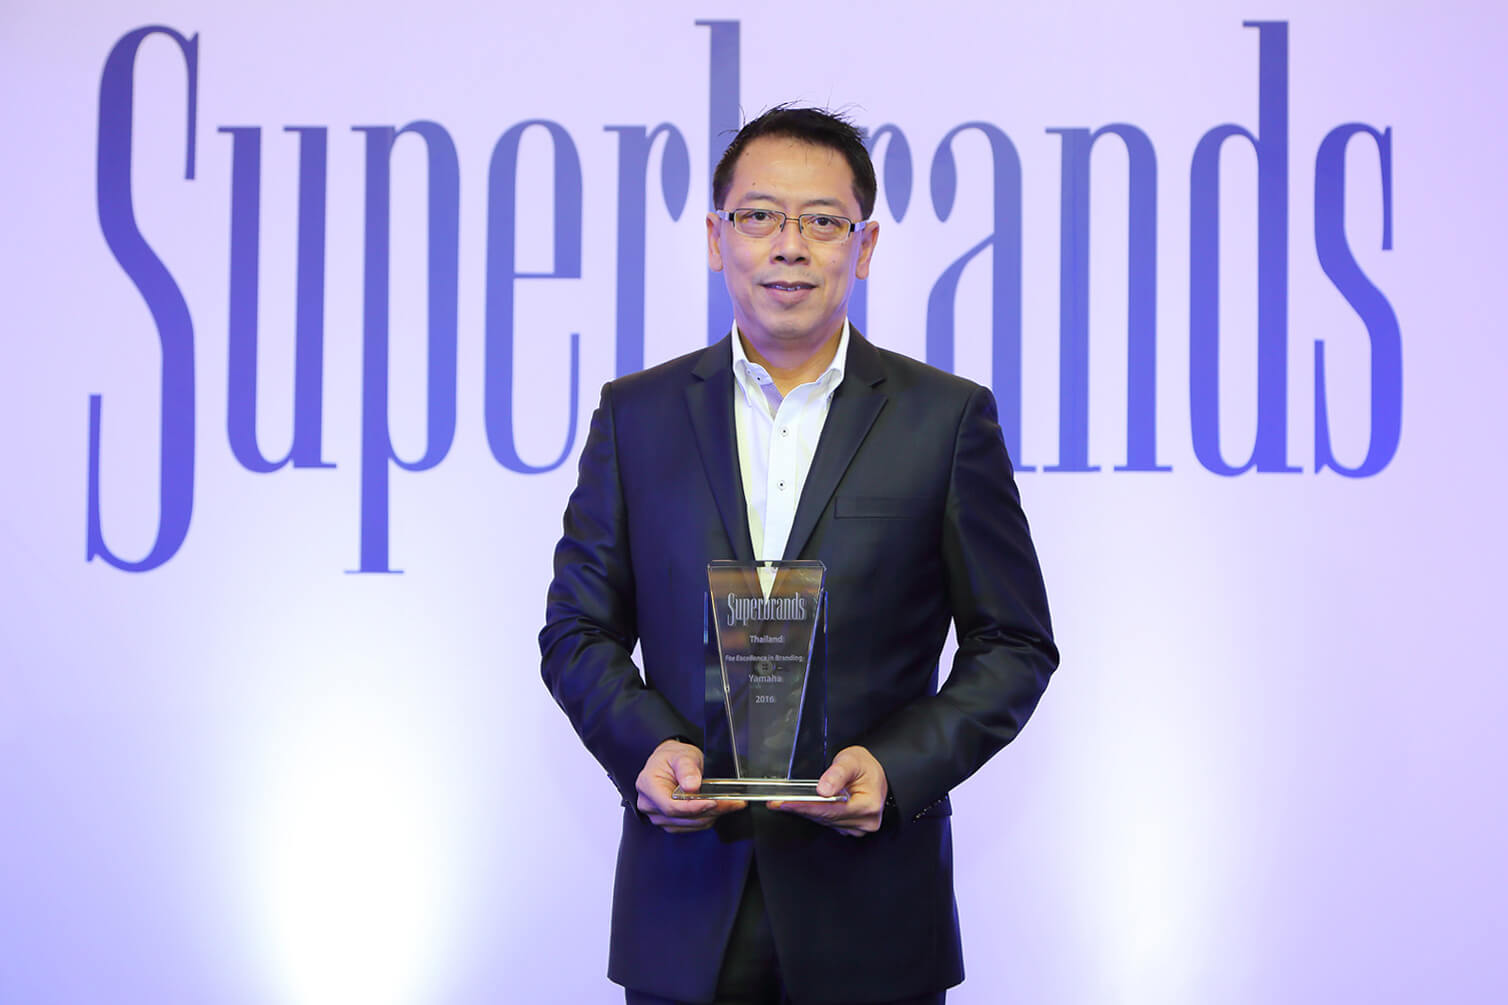 02 ยามาฮ่ารับรางวัล “Superbrands Thailand 2016”